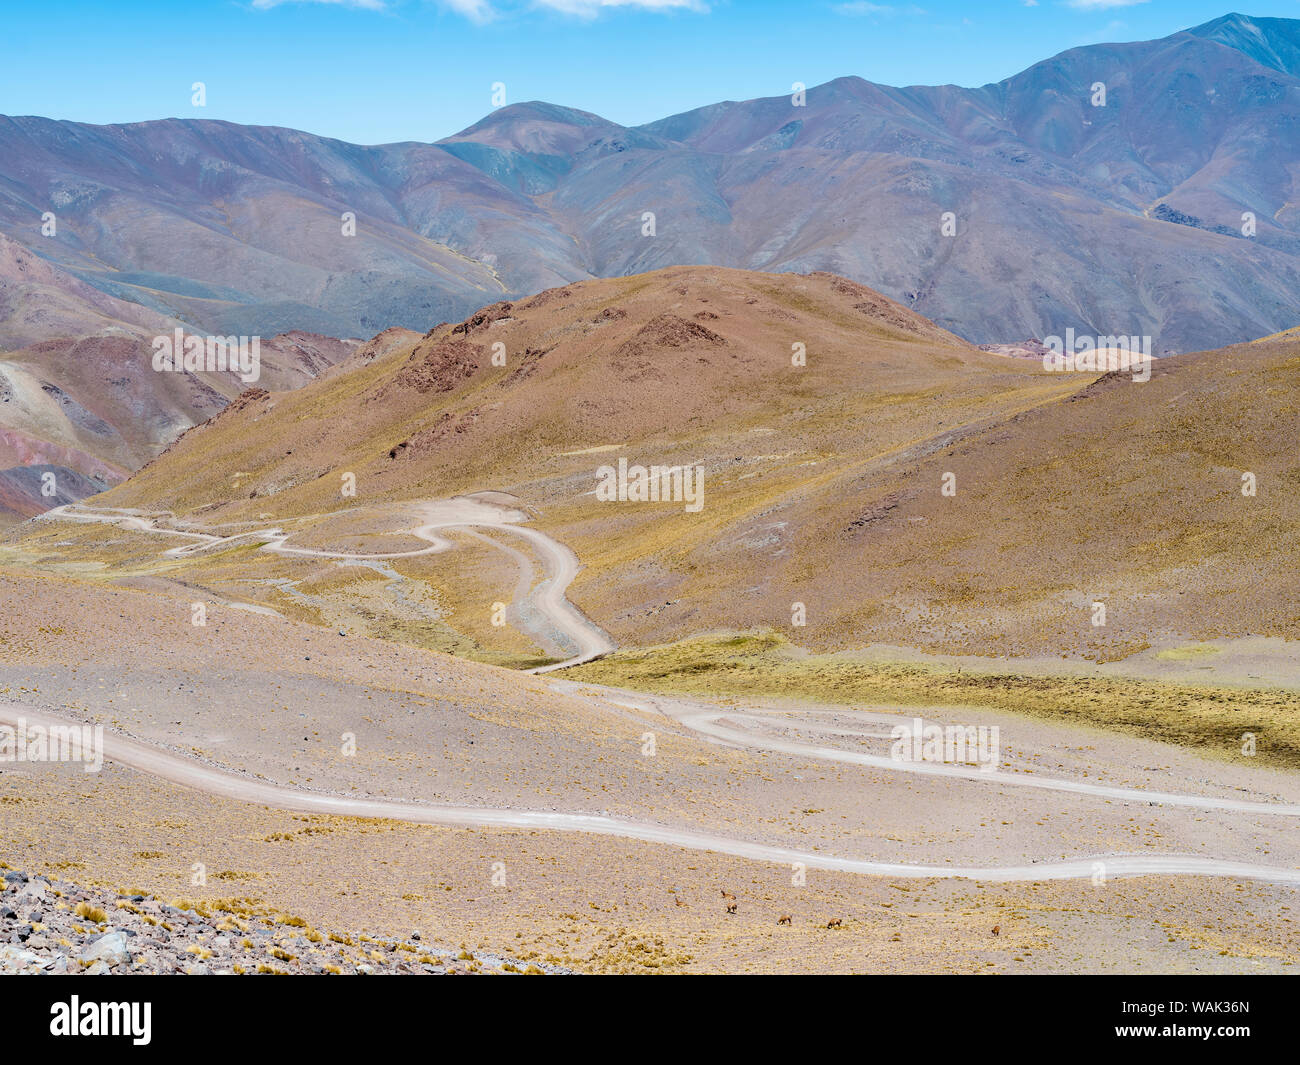 Routa 40 salendo fino a Abra del Acay (4895m), uno dei più alti strade regolari nel mondo. L'Altiplano, Argentina. Foto Stock